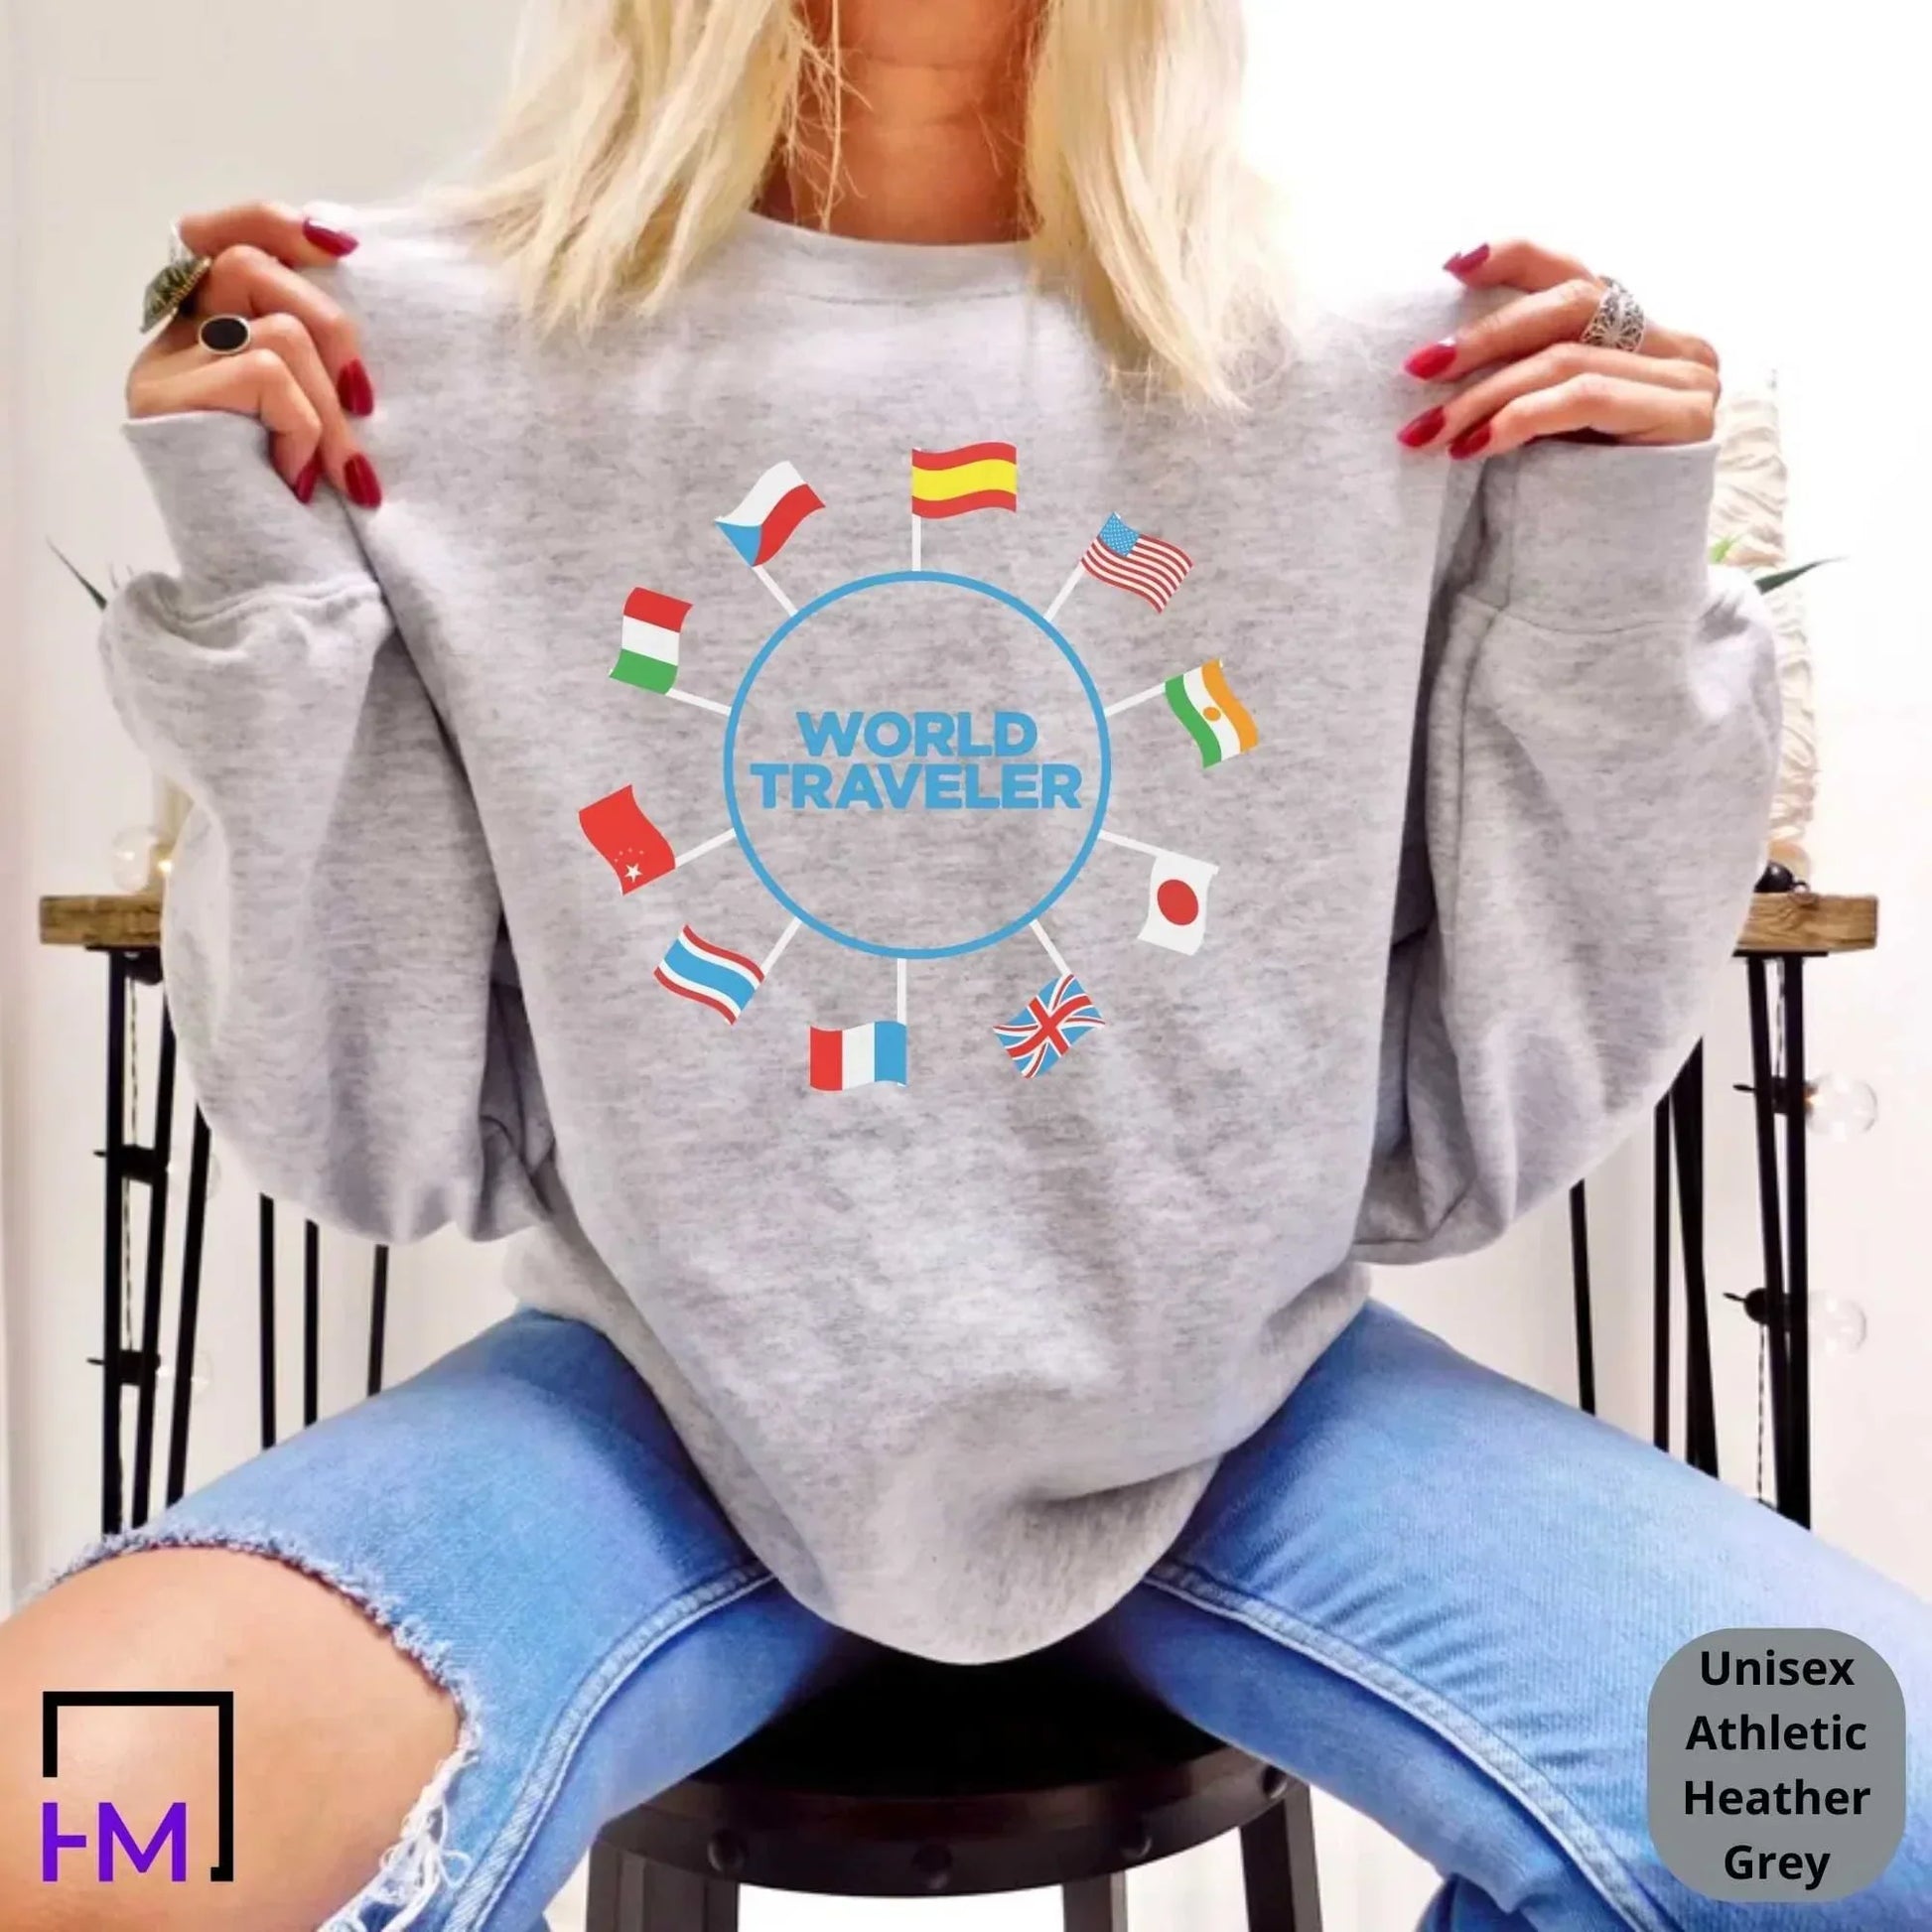 World Traveler Shirt-Gift for Travel Buddies HMDesignStudioUS